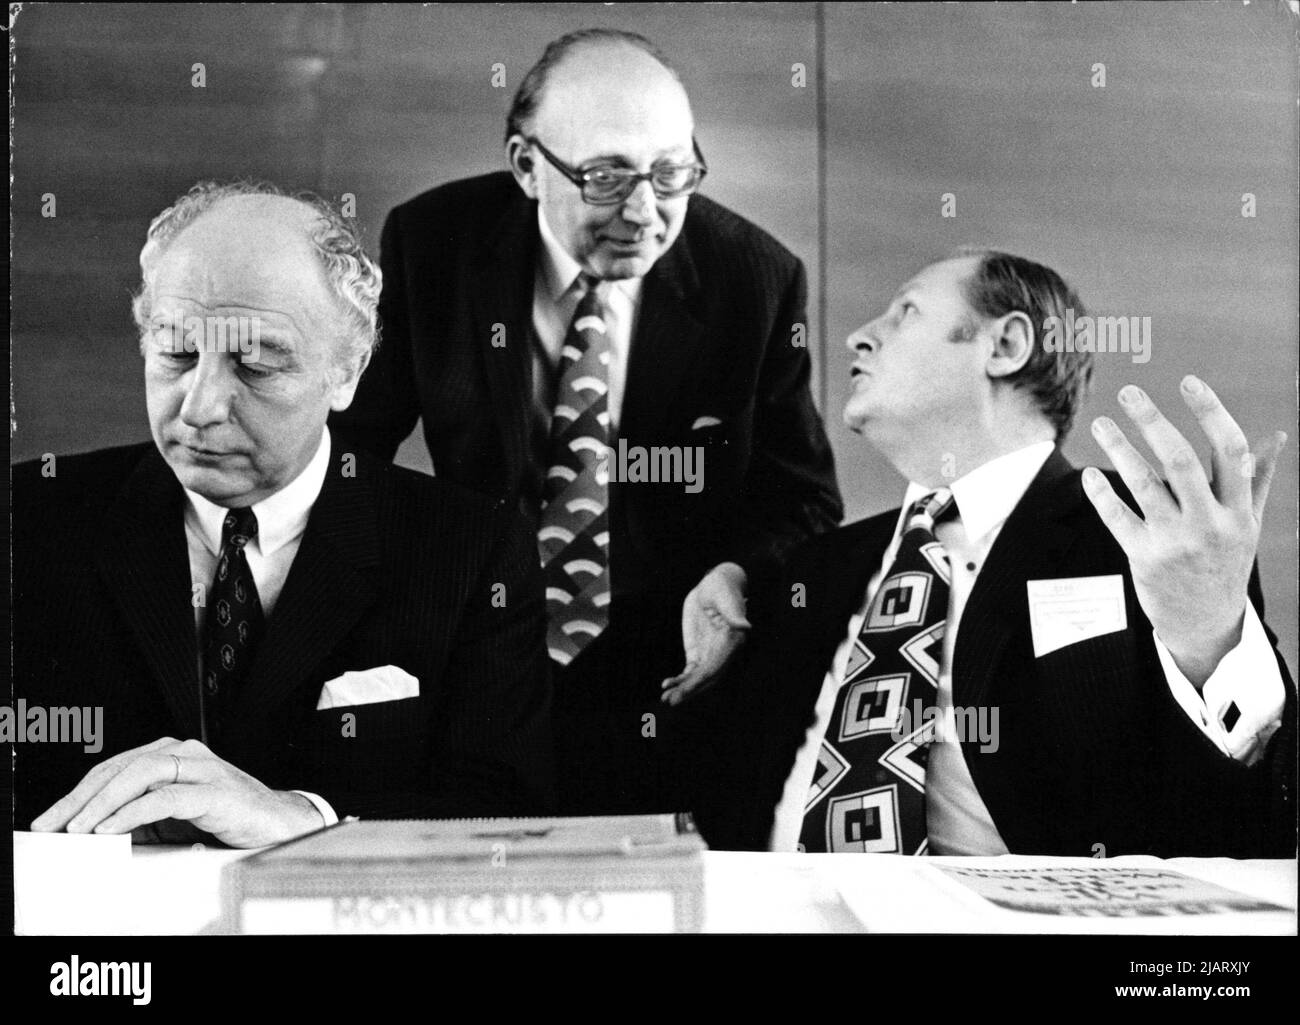 Von links: Walter Scheel, Wolfgang Mischnik und Karl-Hermann Flach. Walter Scheel war ein deutscher Politiker der FDP. Er war von 1974 bis 1979 der vierte Bundespräsident der Bundesrepublik Deutschland. Stock Photo